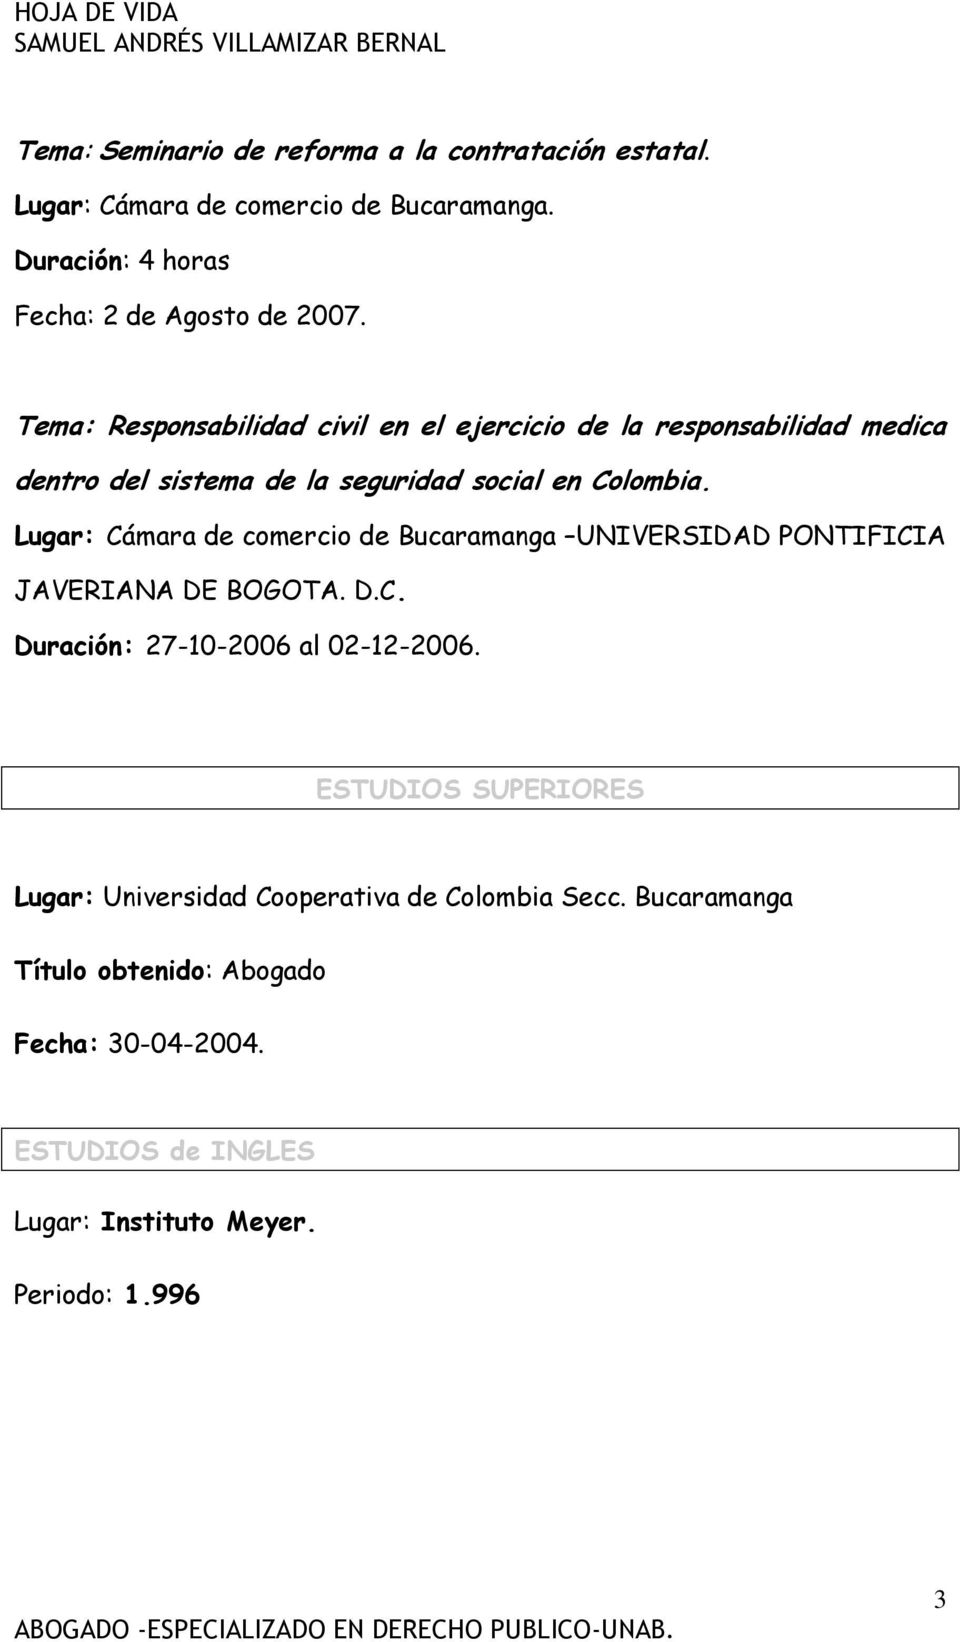 Lugar: Cámara de comercio de Bucaramanga UNIVERSIDAD PONTIFICIA JAVERIANA DE BOGOTA. D.C. Duración: 27-10-2006 al 02-12-2006.